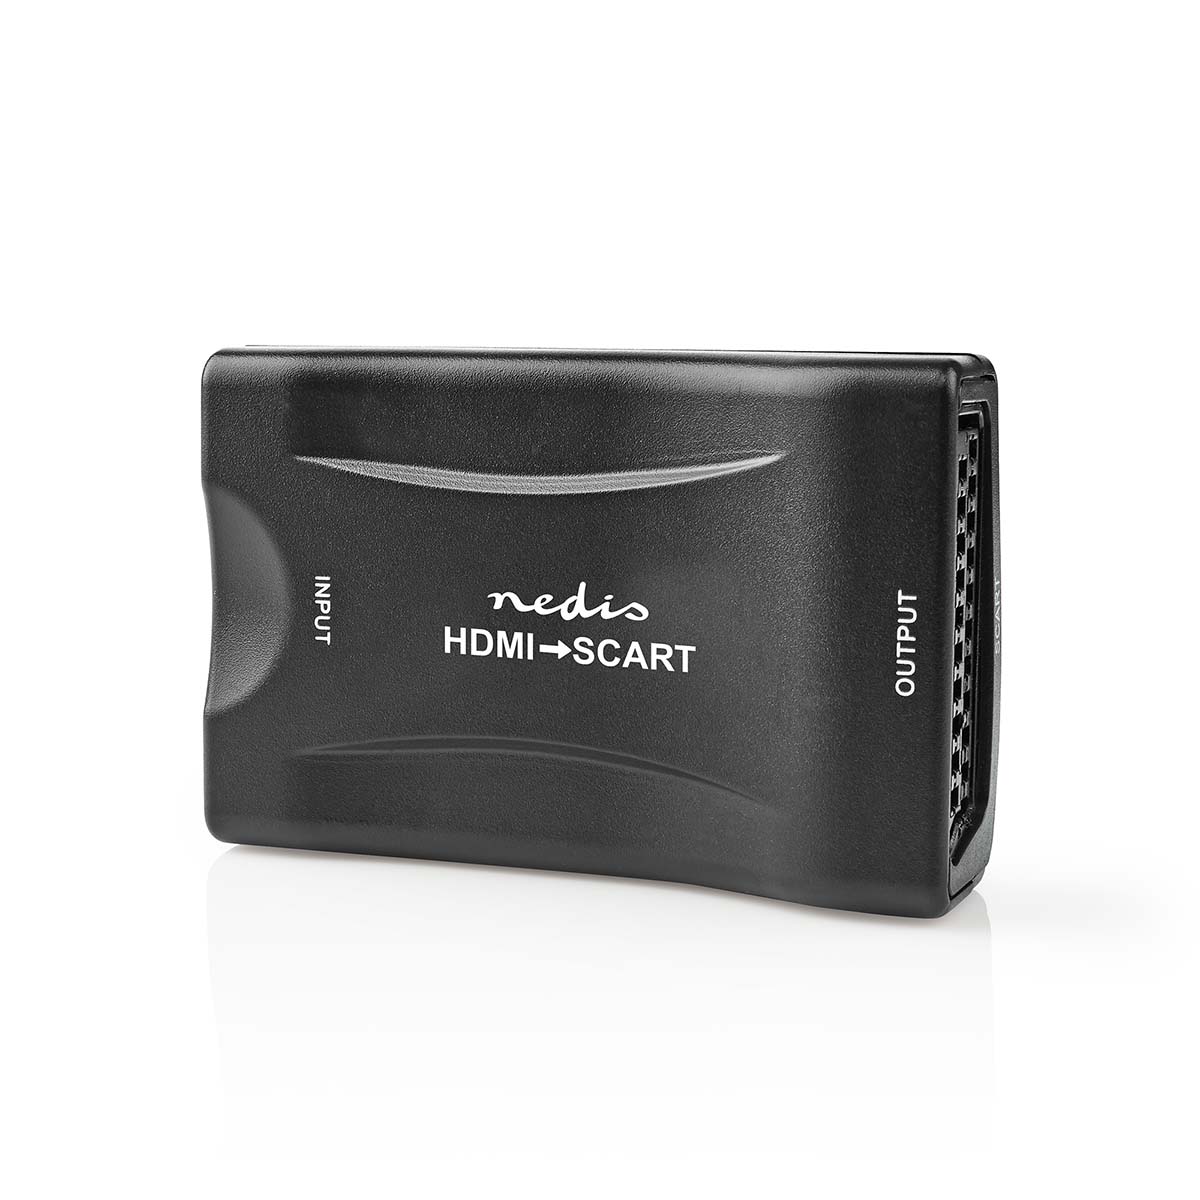 NEDIS HDMI™ Převodník | Vstup HDMI ™ | SCART Zásuvka | 1cestný | 1080p | 1.2 Gbps | ABS | Černá